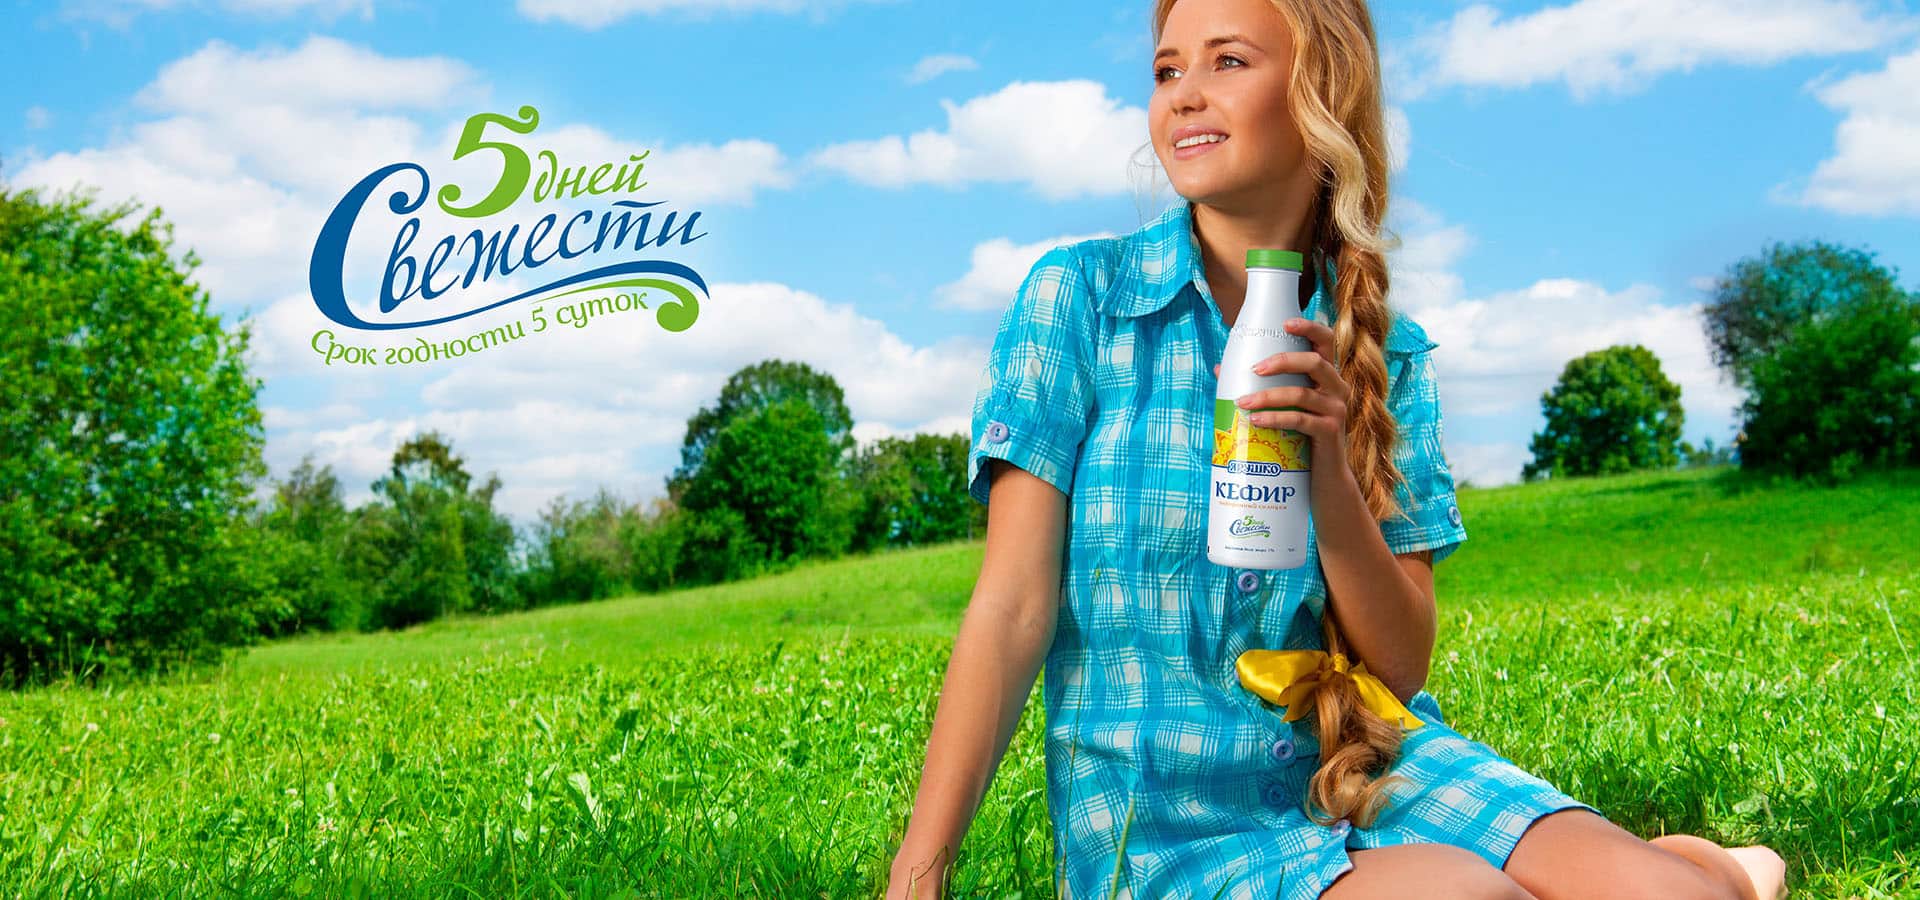 Концепция молочного бренда «Ярушко» основана на классических славянских ценностях